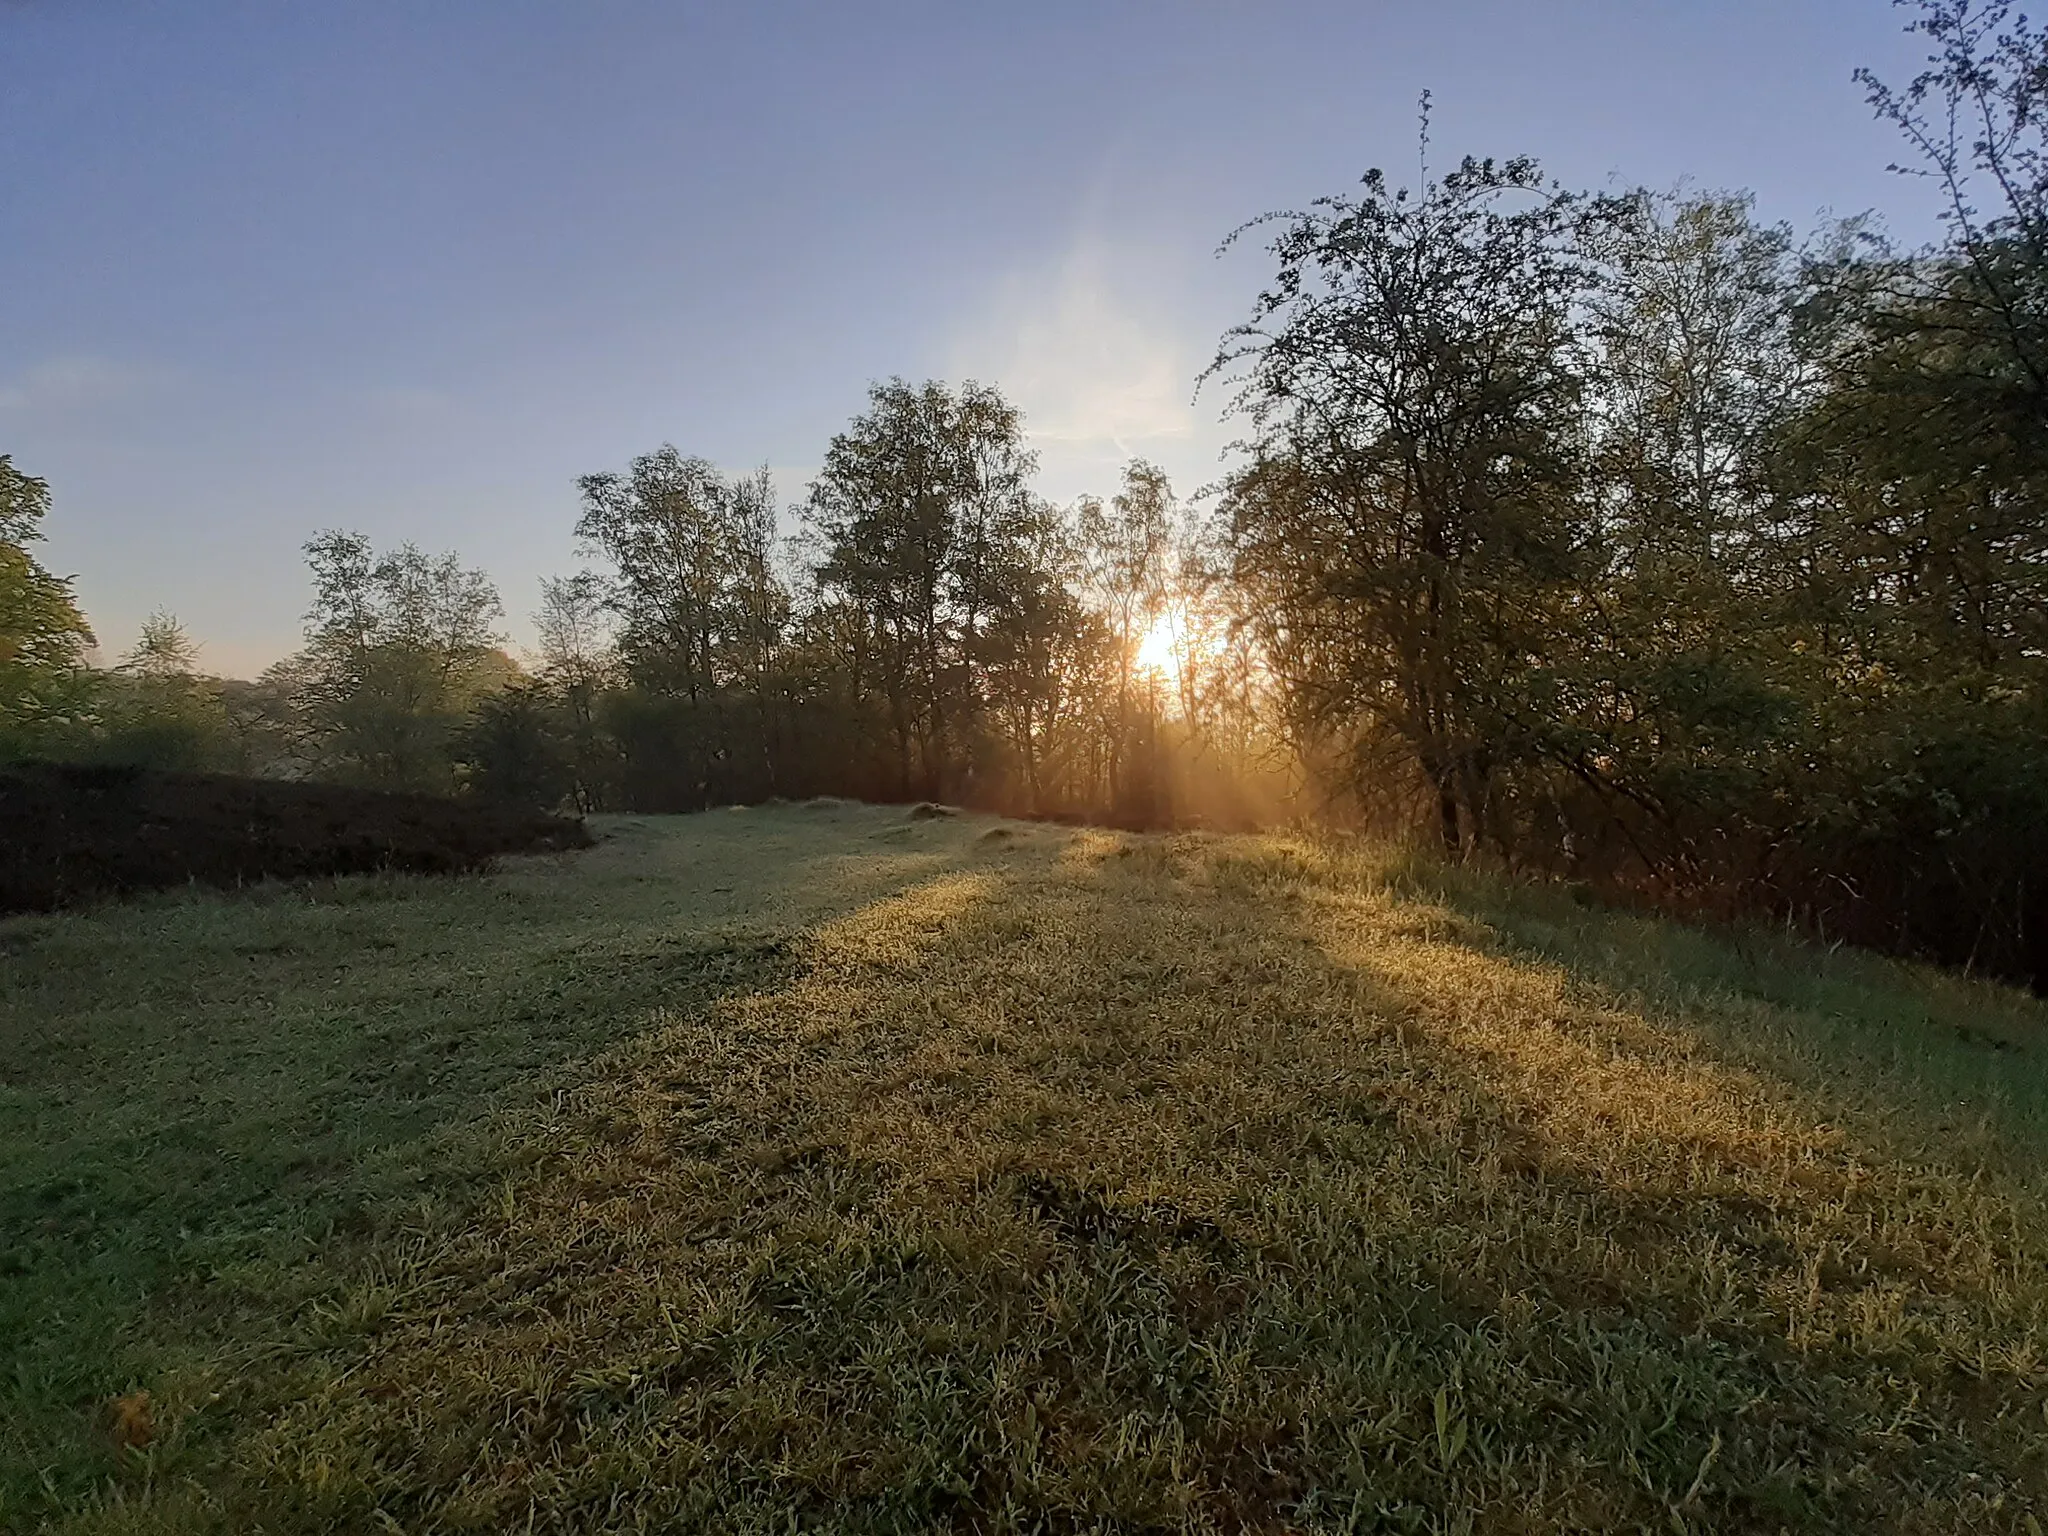 Photo showing: Sonnenaufgang am Mittwochmorgen des 13.05.2021 im Landschaftsschutzgebiet Scharpennacken (Wuppertal), als die ersten wärmenden Sonnenstrahlen sich ihren Weg zwischen den Weißbirken und Buchen hindurch bahnen.